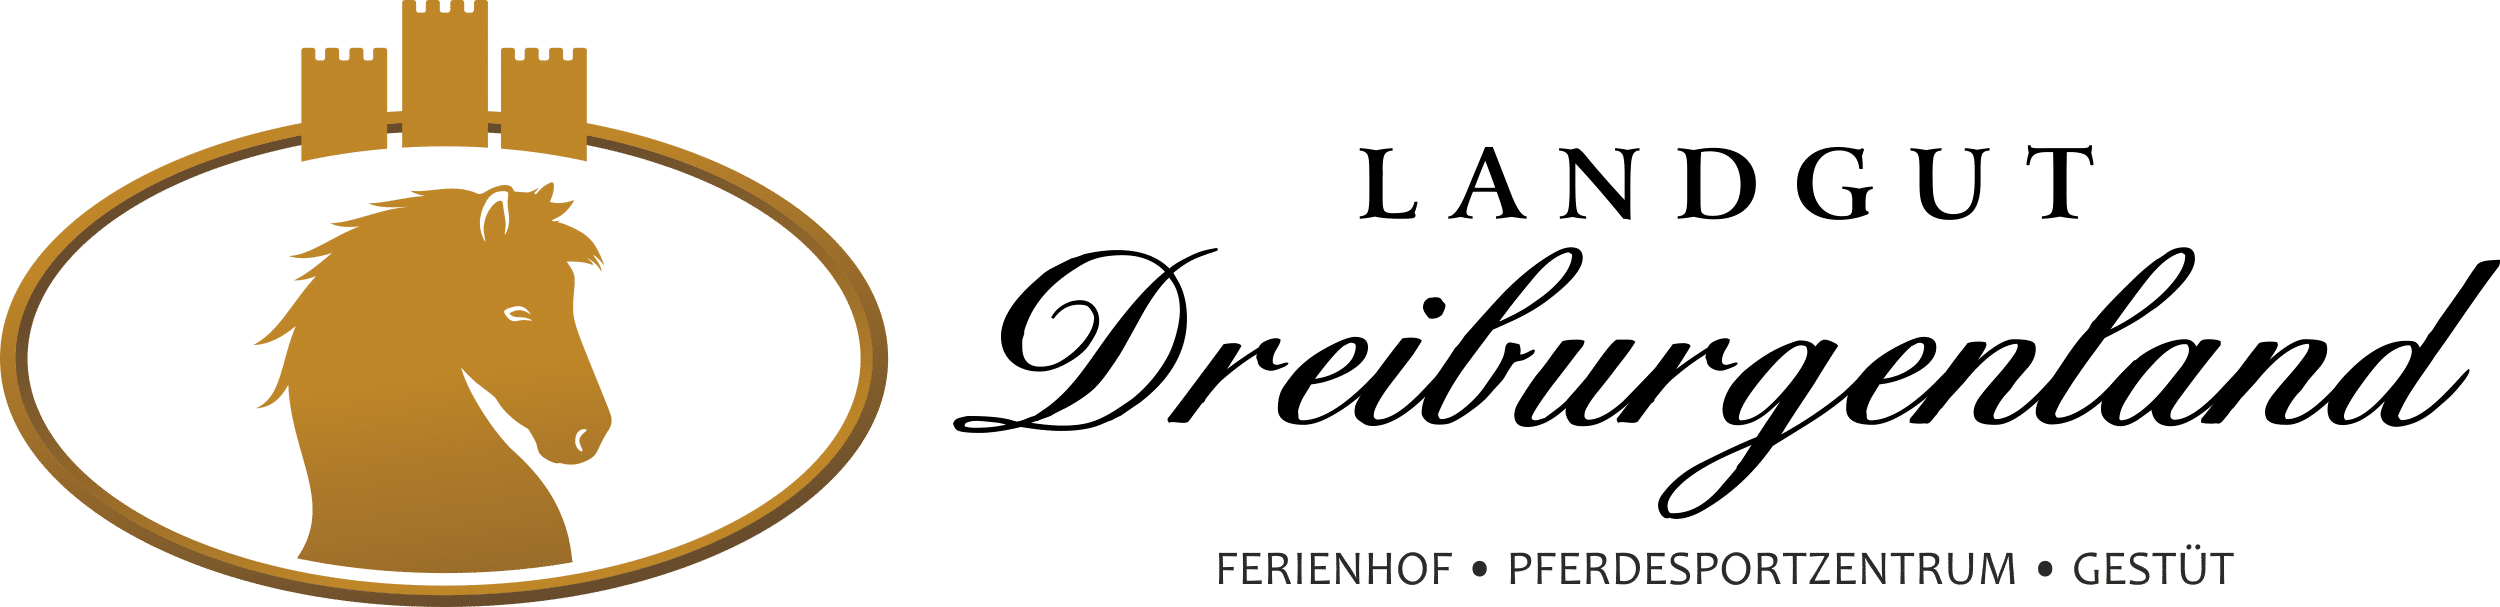 Ferienhof, Pferdesportzentrum und Gestüt "Landgut Dreiburgenland" | Datenschutzerklärung - Landgut-Dreiburgenland